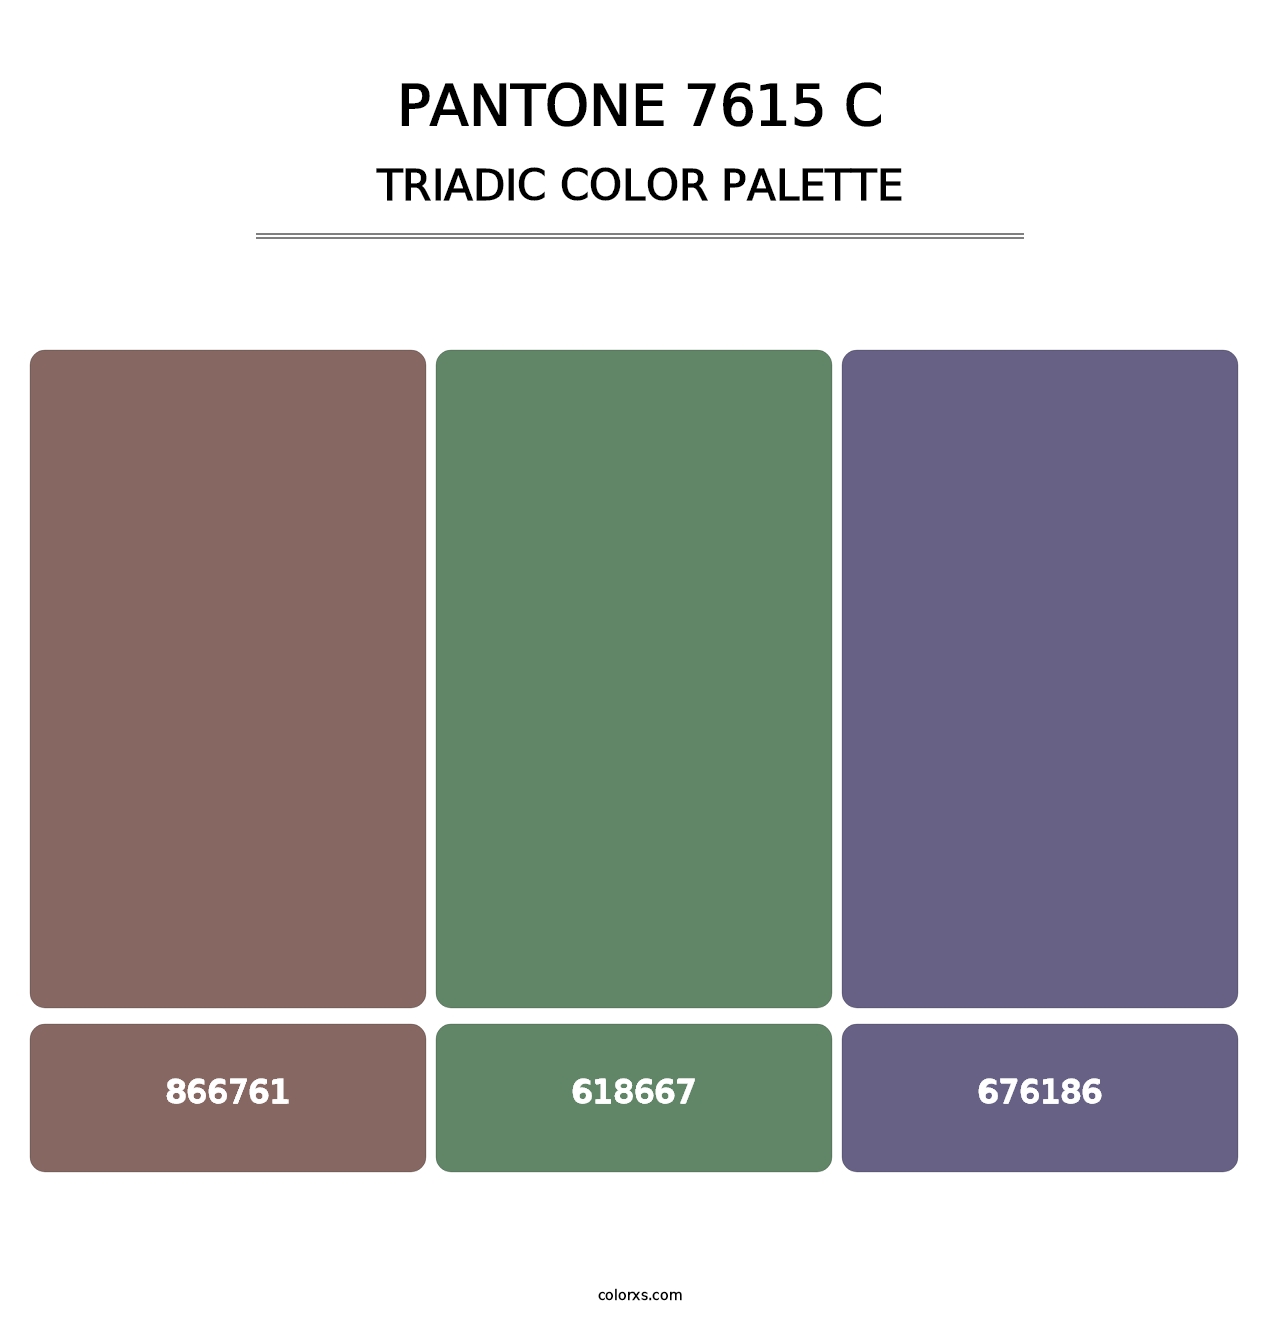 PANTONE 7615 C - Triadic Color Palette